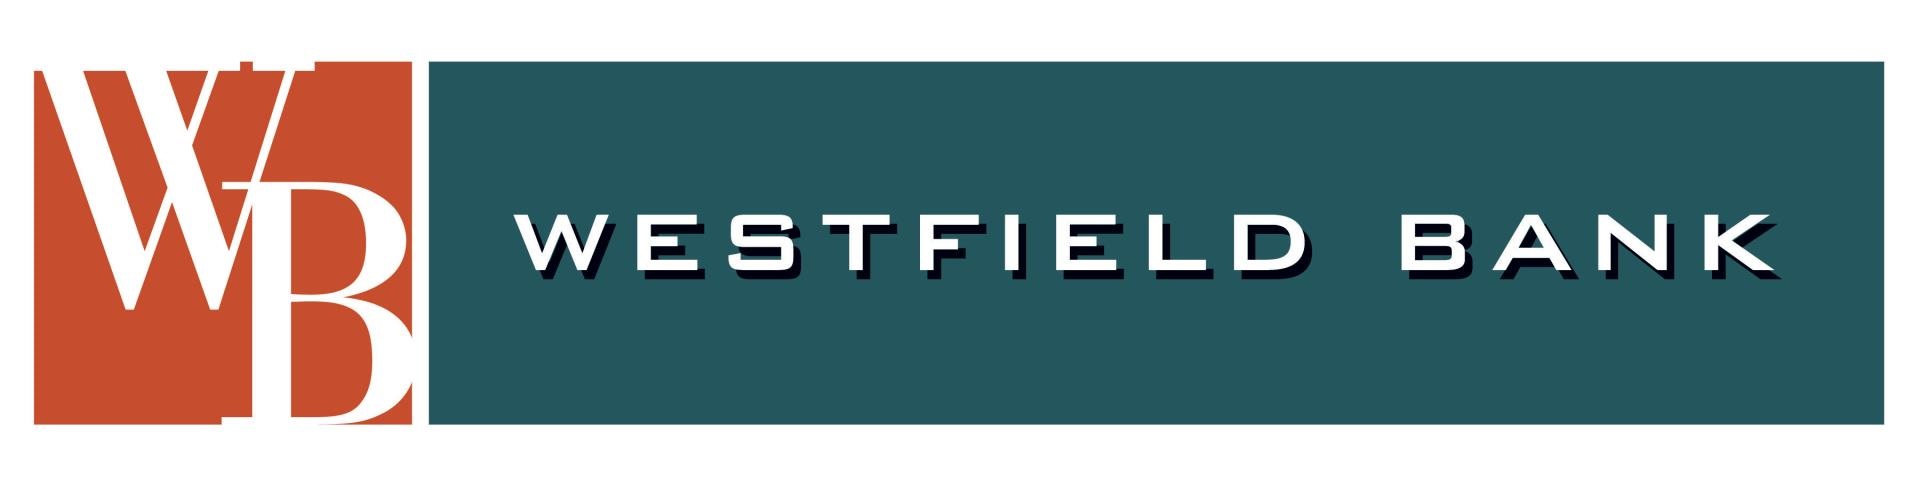 Westfield Bank logo